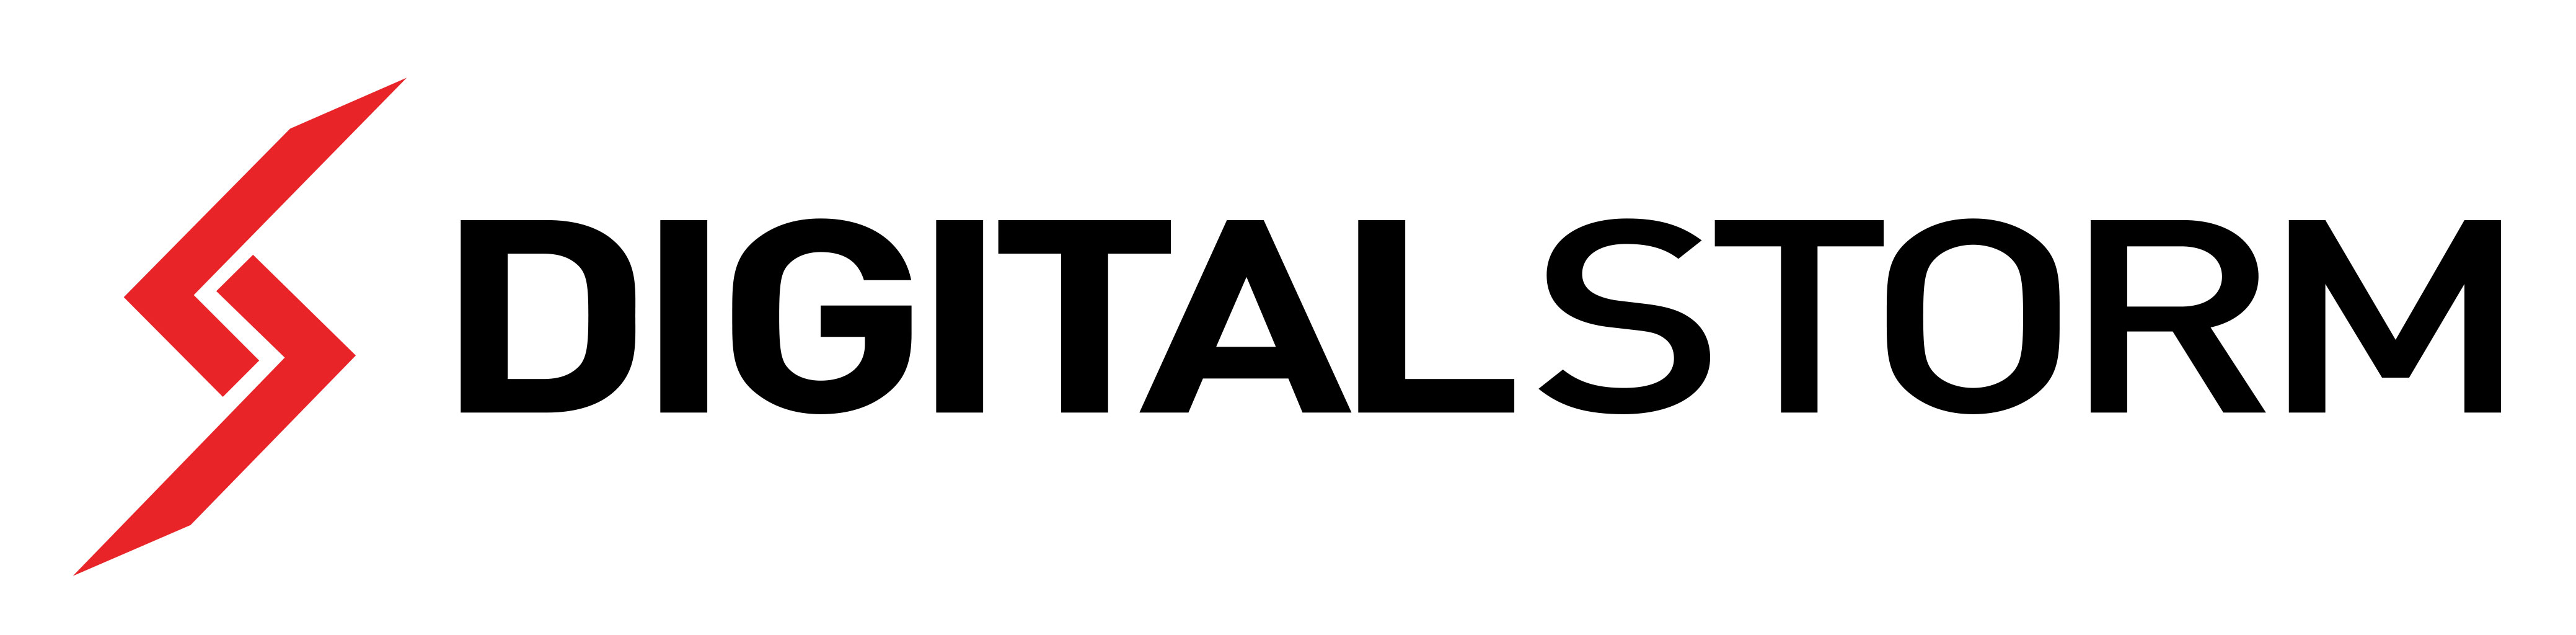 Digital-Storm-Logo-4.jpg